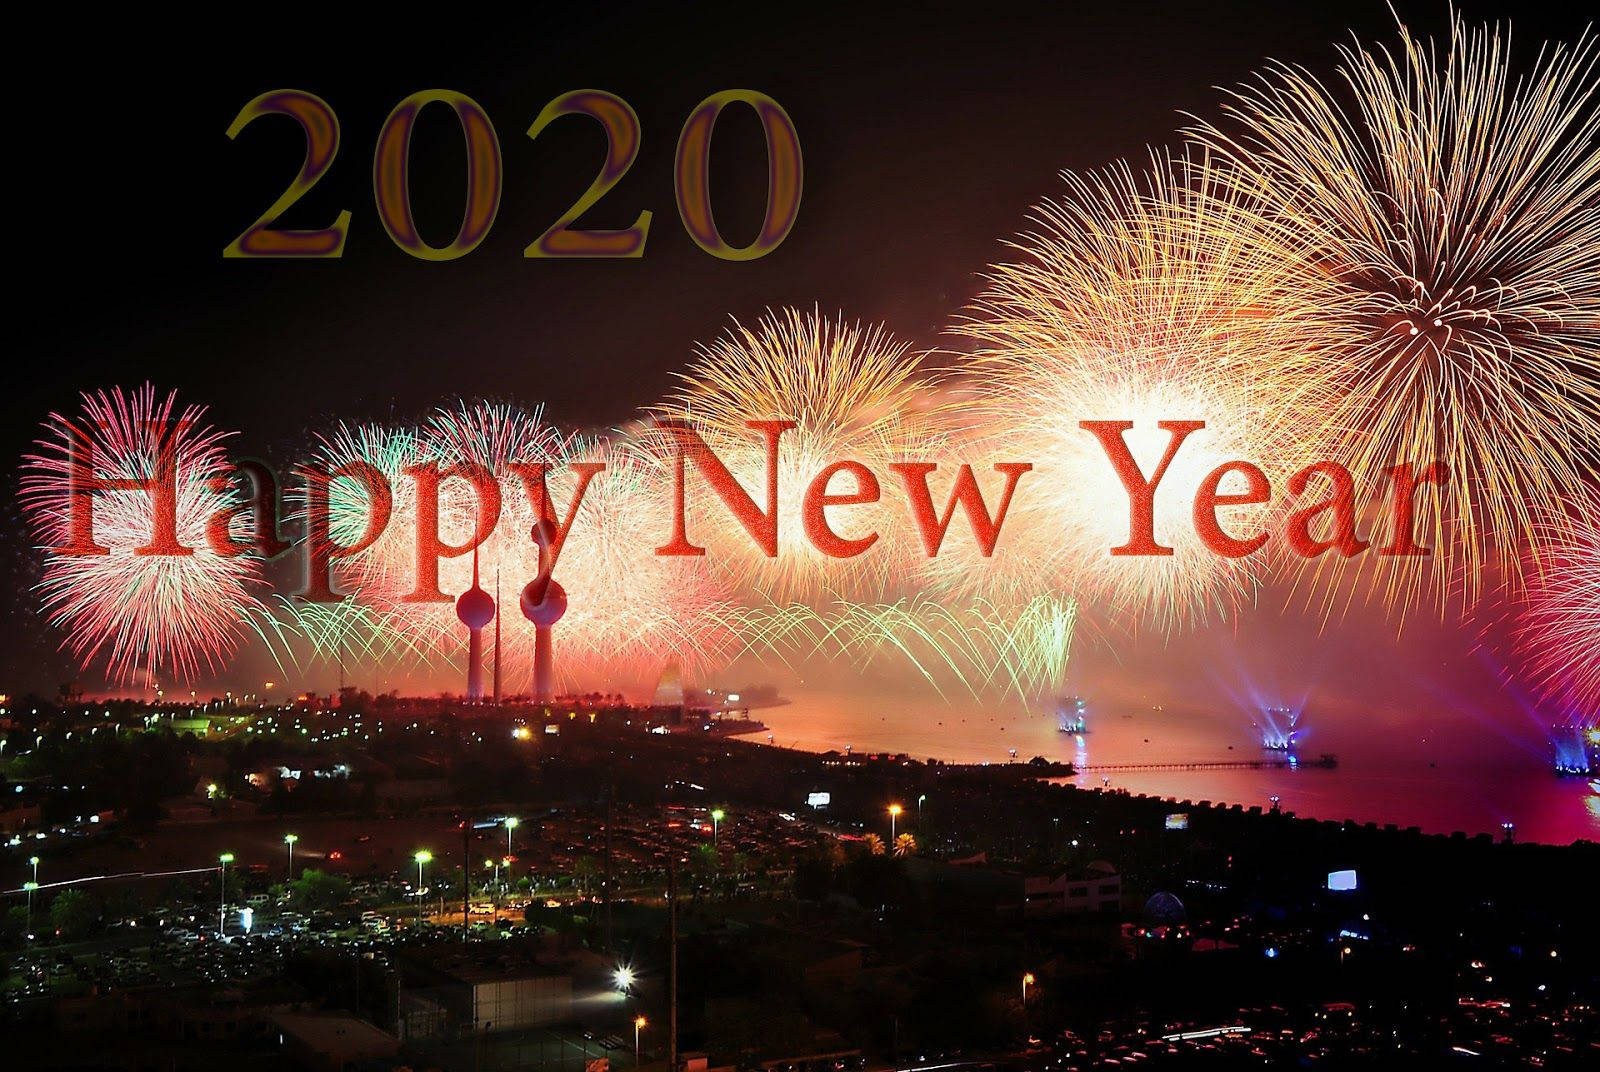 Felizano Novo 2020 - Imagem De Desejos De Feliz Ano Novo 2020. Papel de Parede